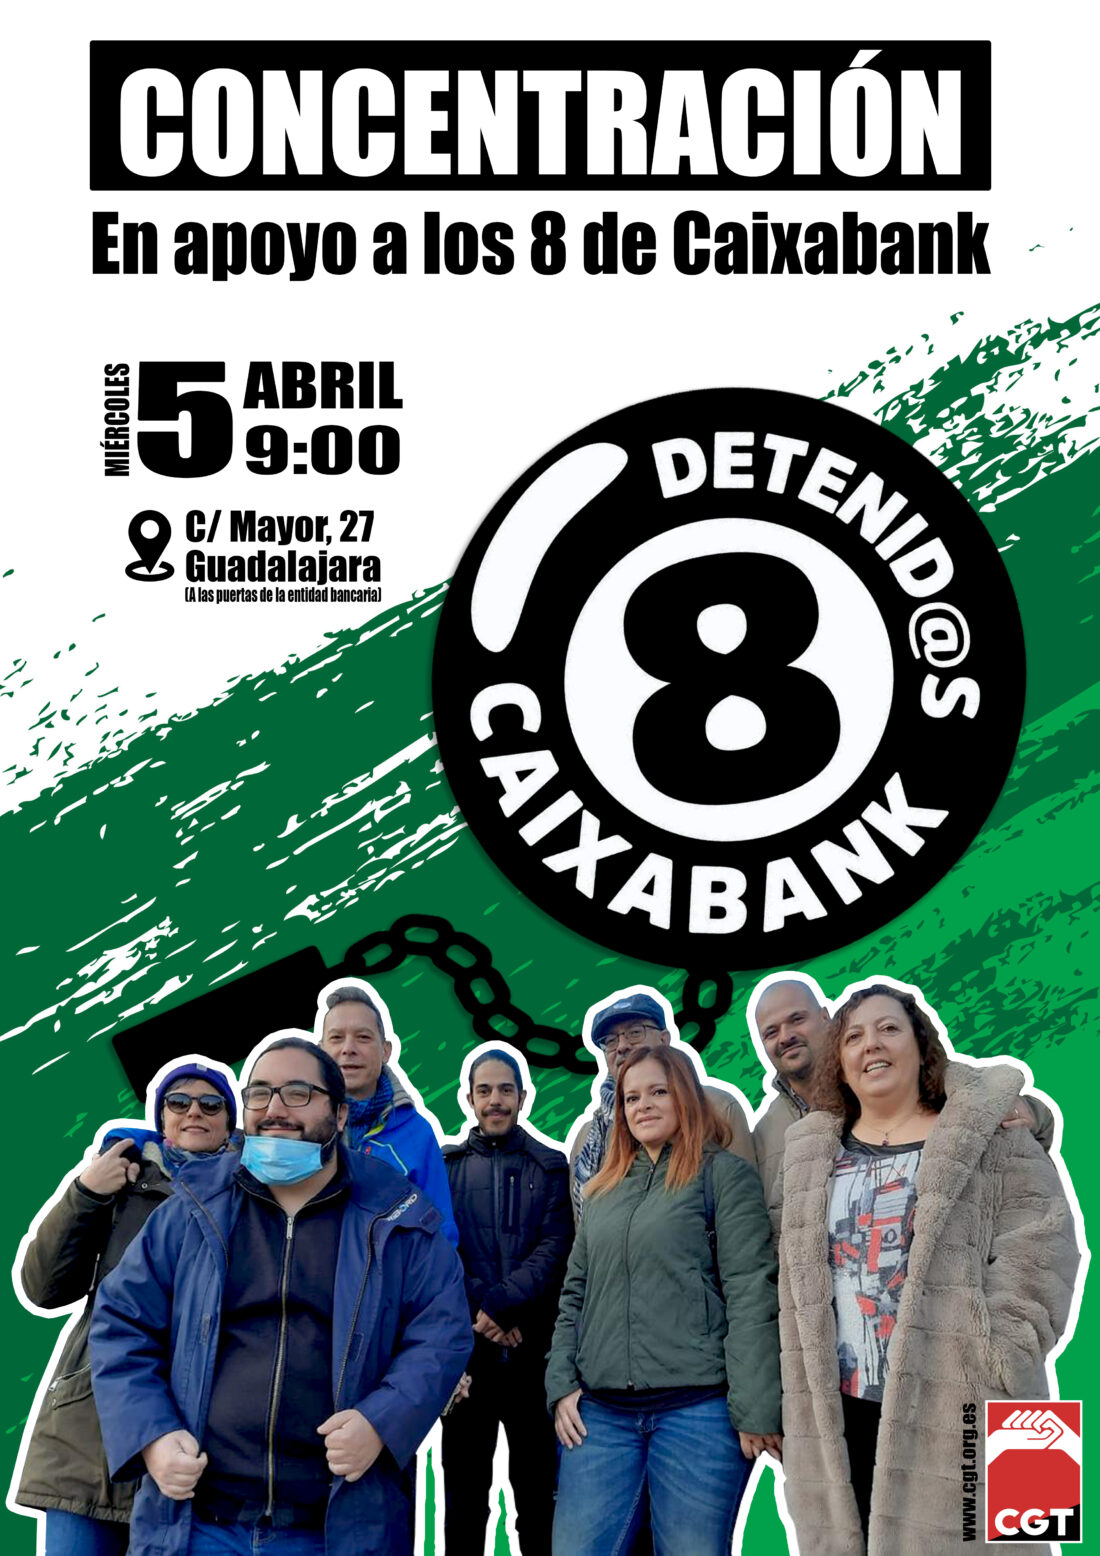 Ante la criminalización de la protesta, la dignidad rebelde de “Las 8 de Caixabank”